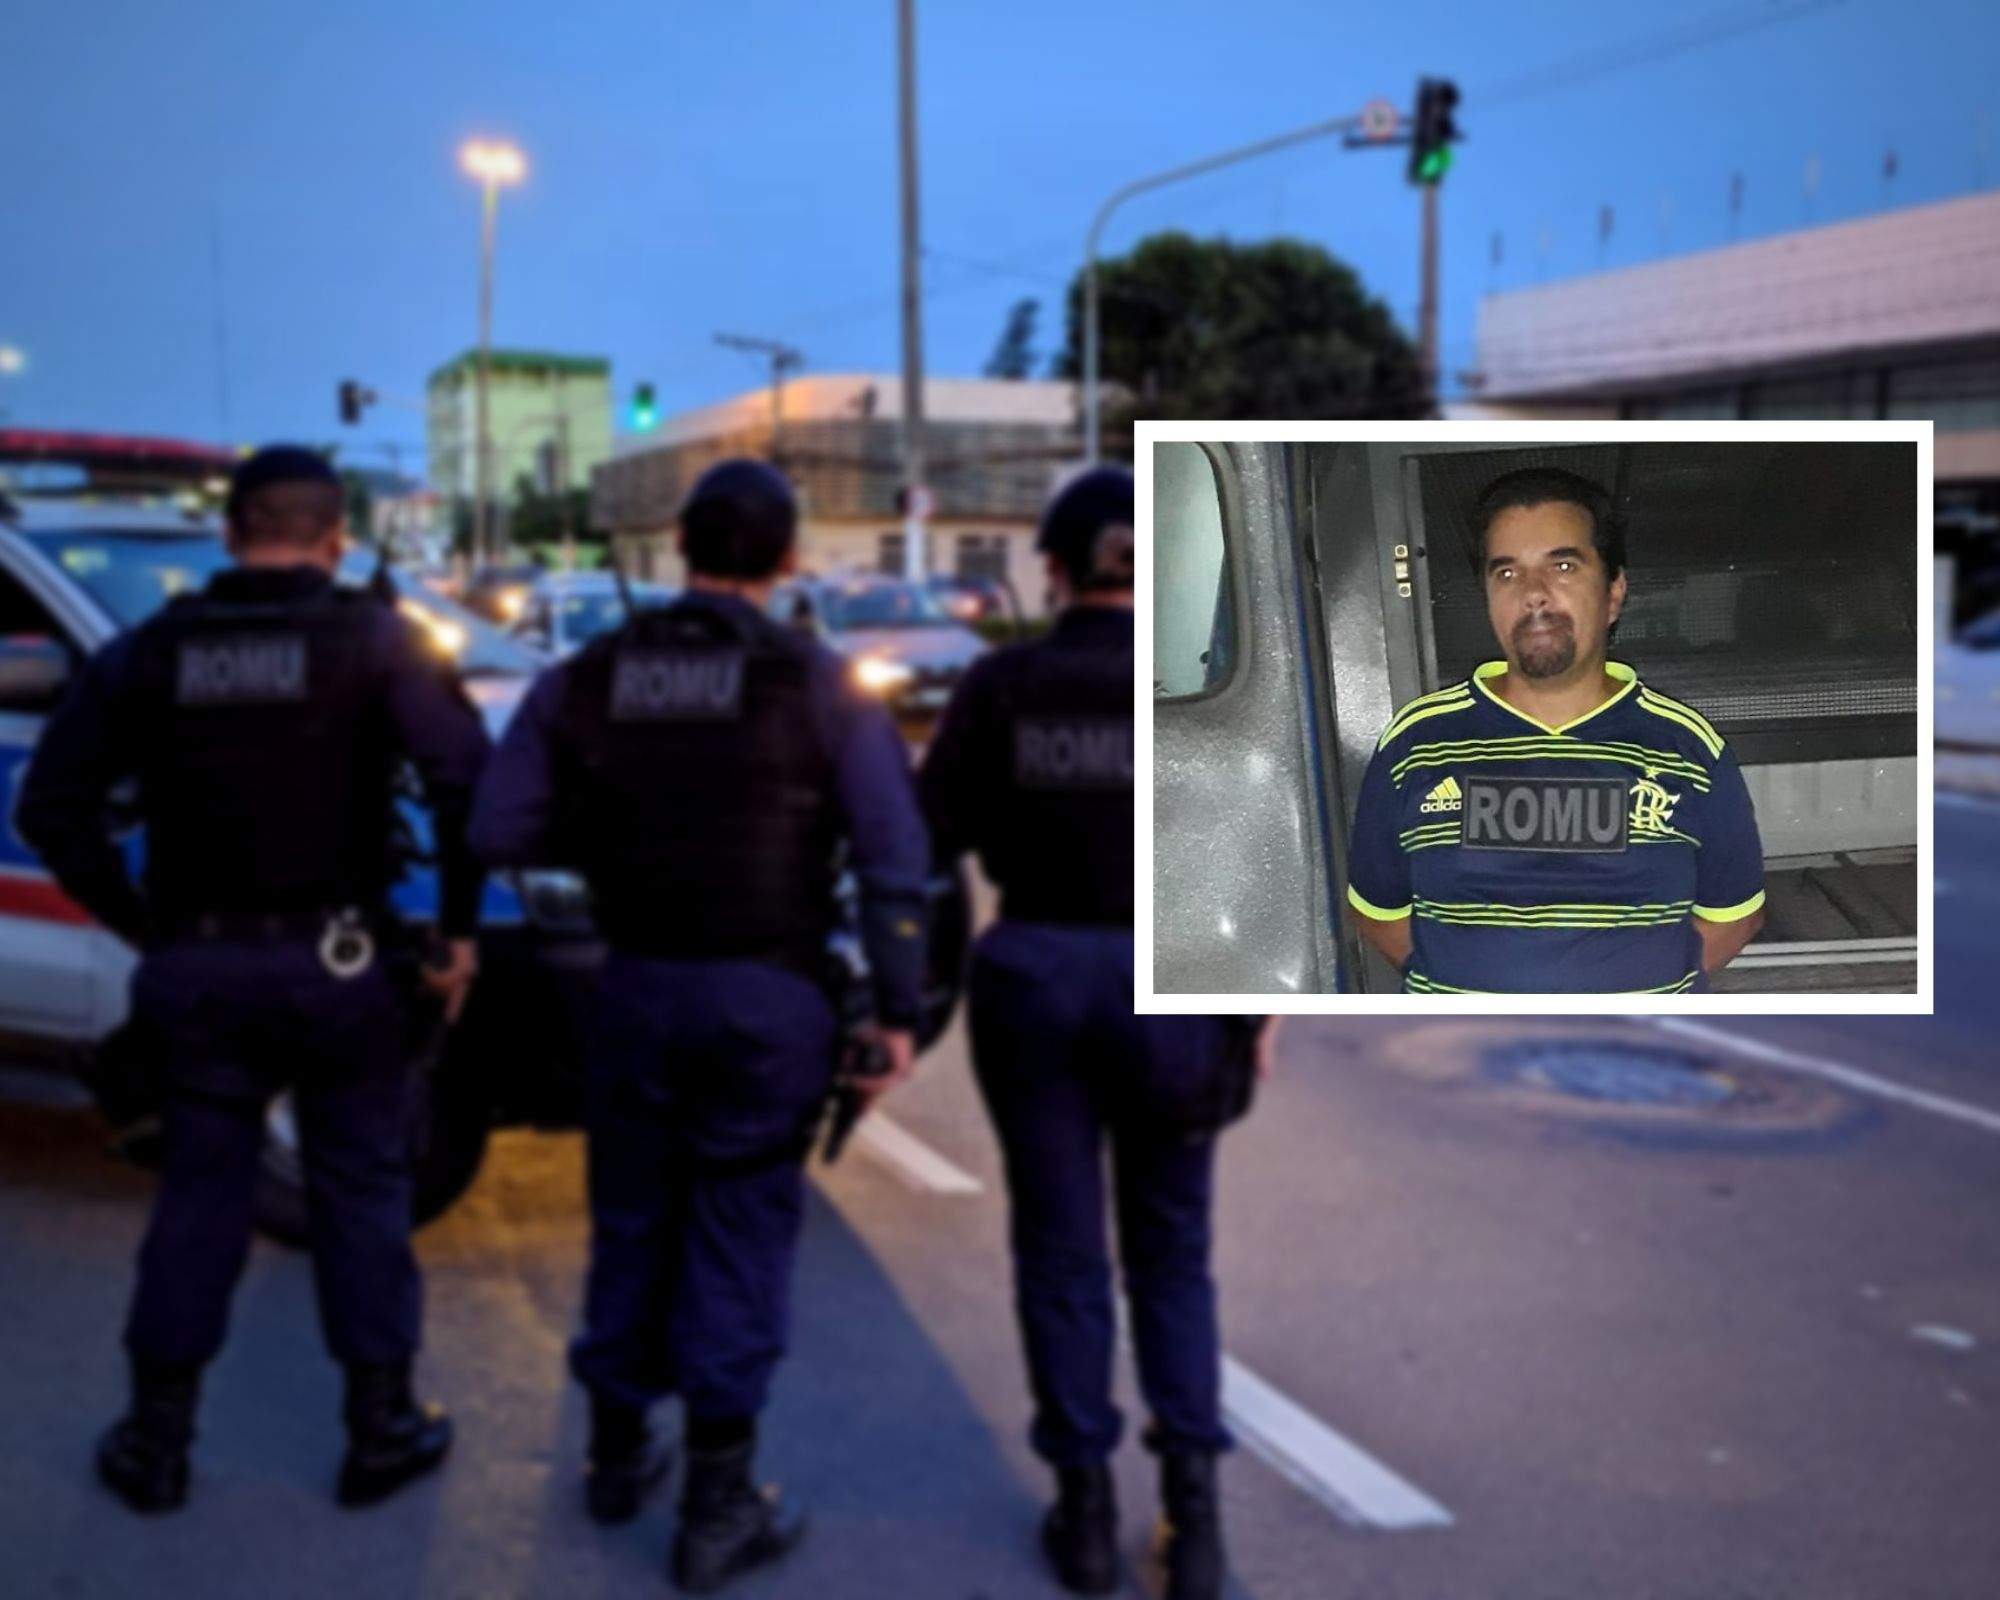 Condenado por homicídio, foragido da Justiça do Rio Grande do Sul é preso em Vila Velha - Jornal Folha Vitória